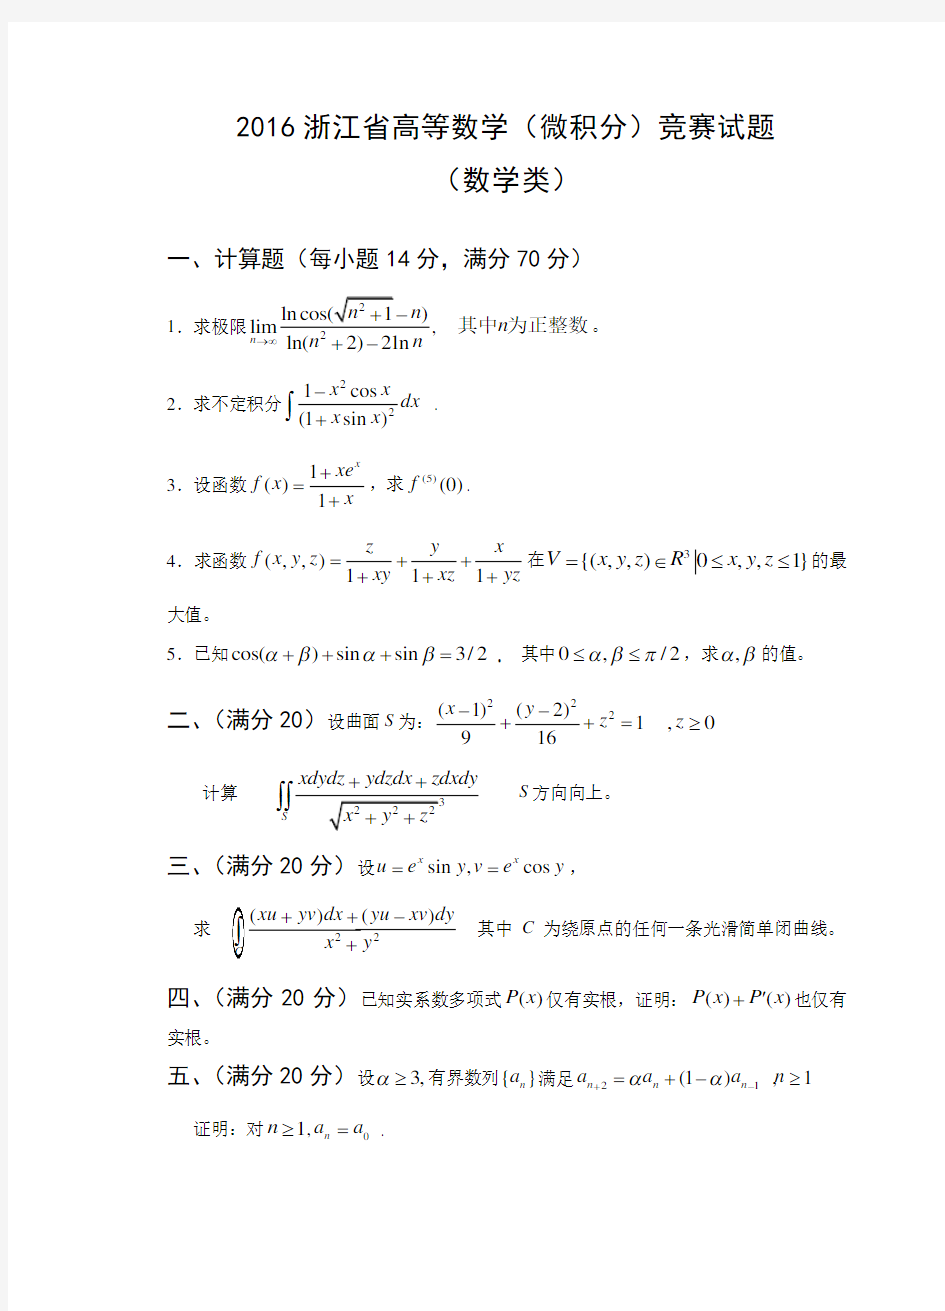 2016浙江省高等数学竞赛试题(数学类)